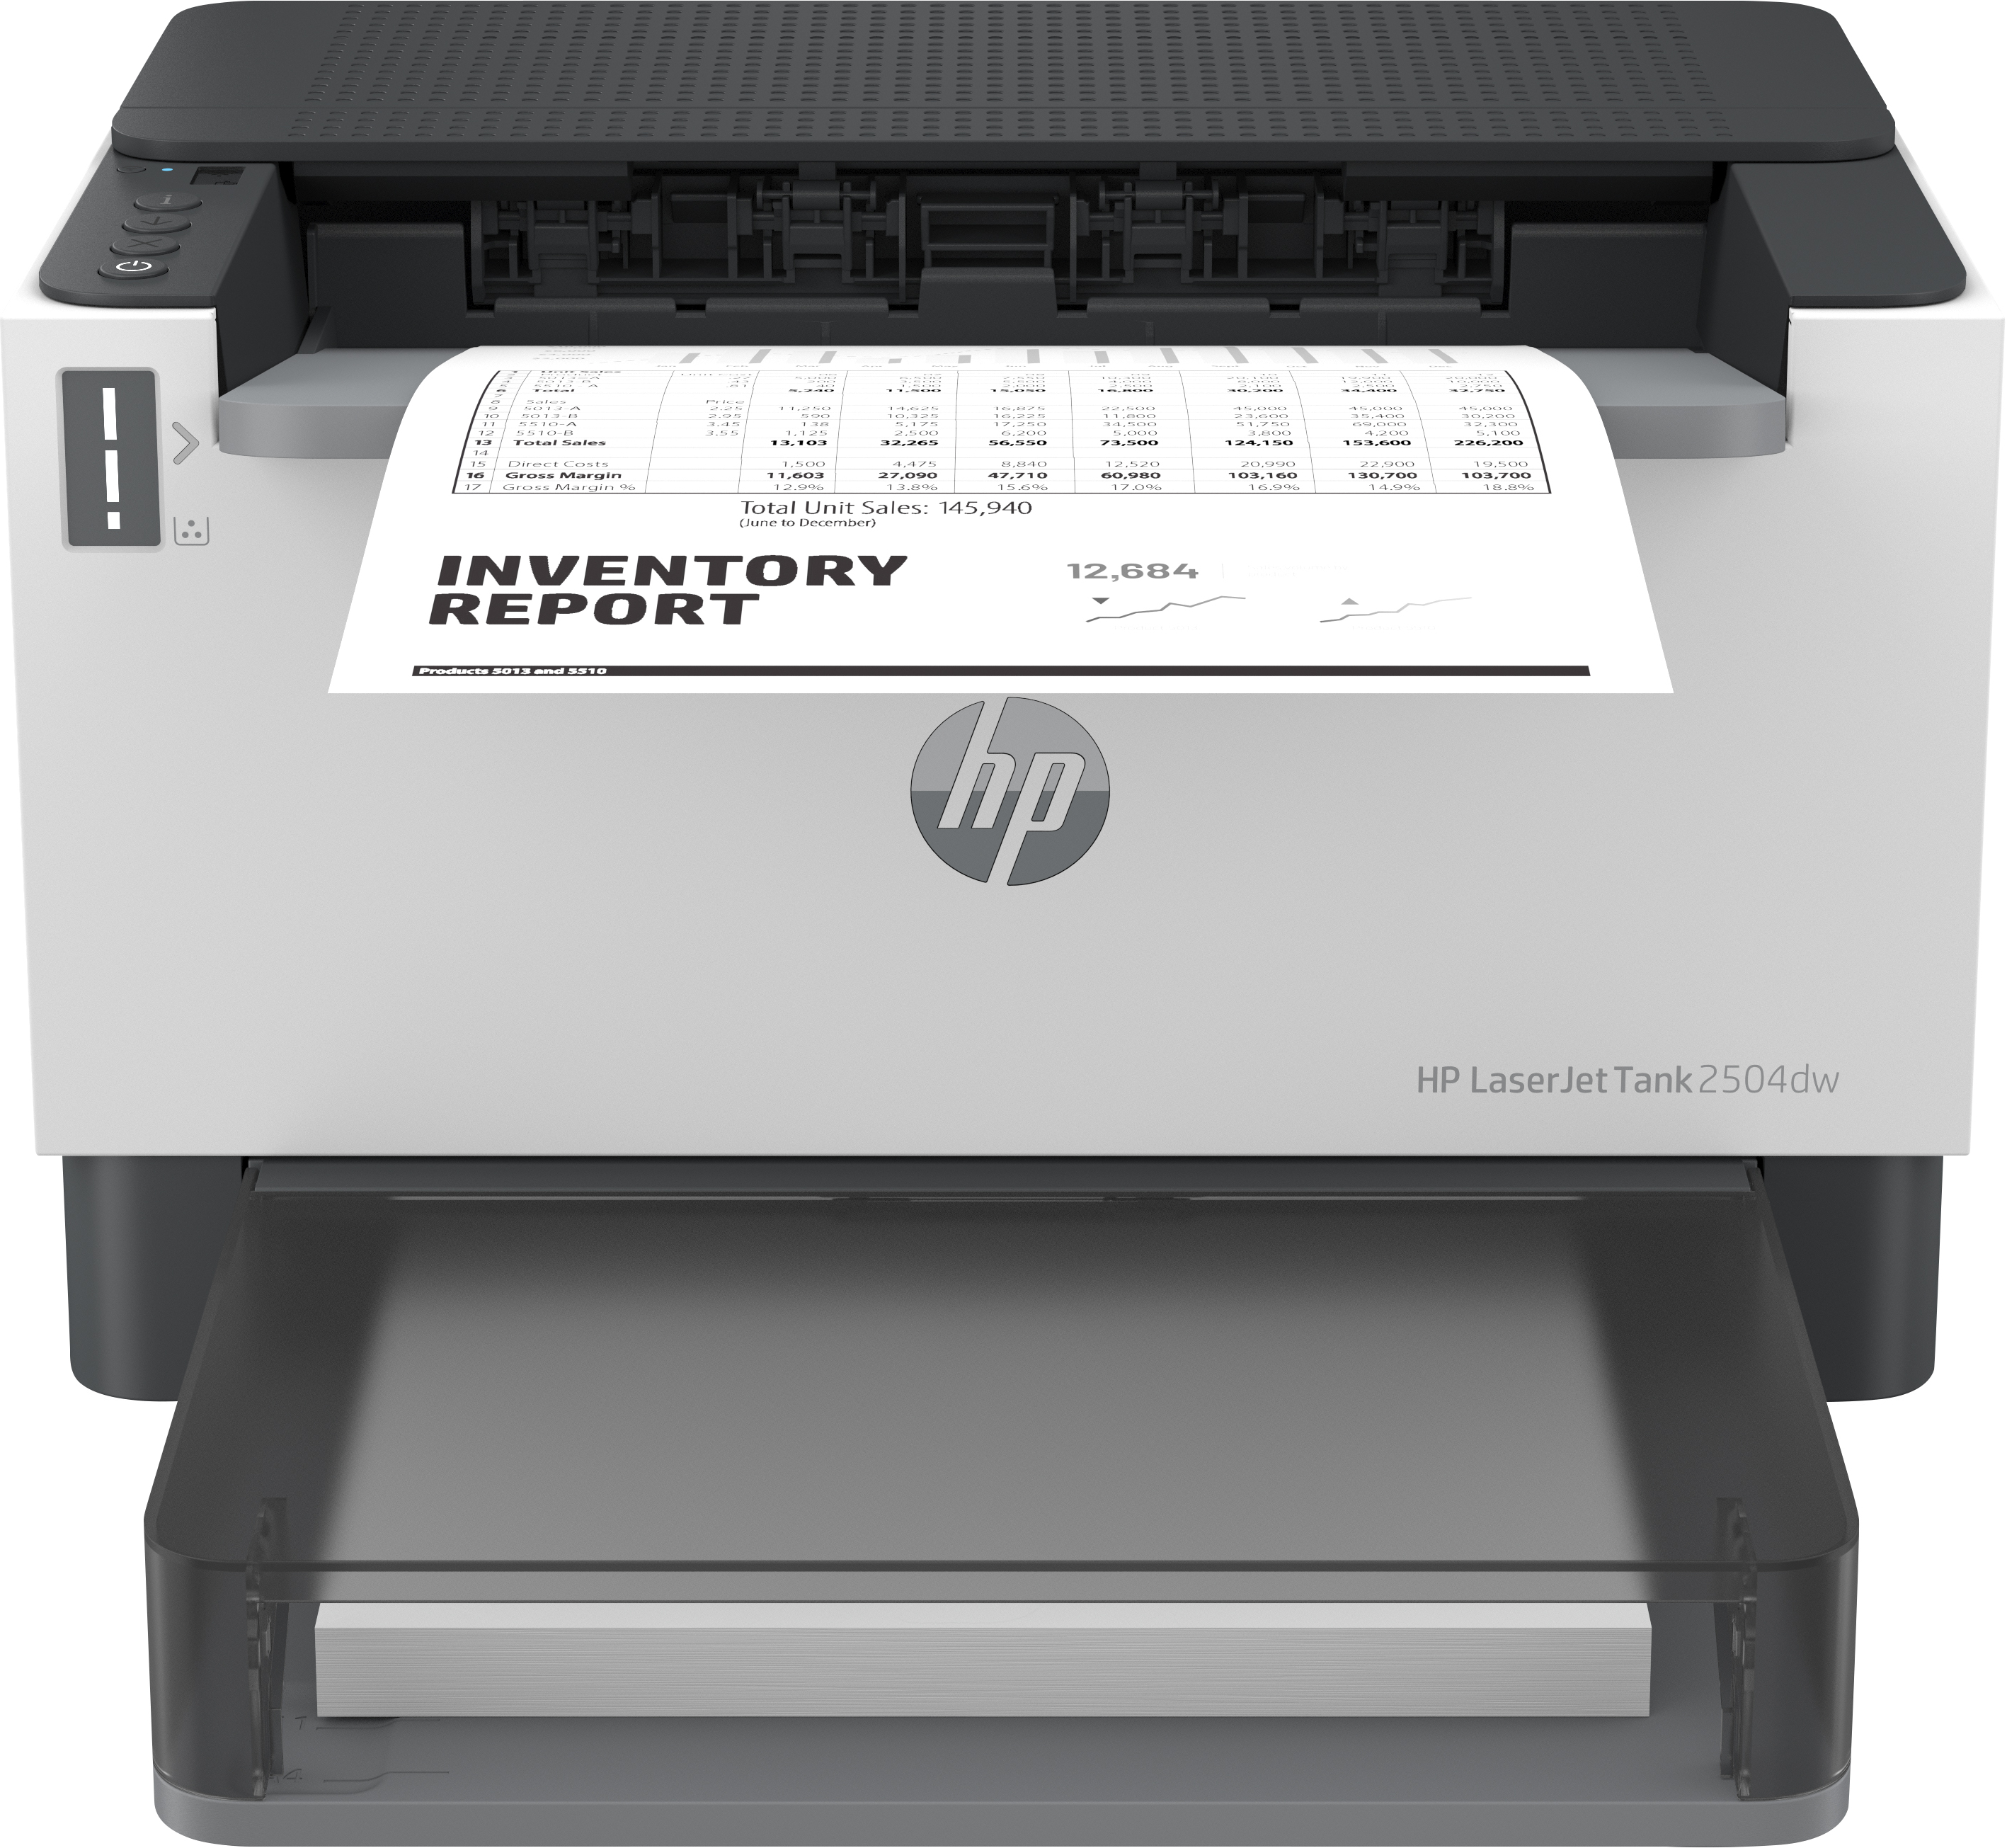 HP Imprimante LaserJet Tank 2504dw, Noir et blanc, Imprimante pour Entreprises, Imprimer, Impression recto-verso. Taille compacte. Éco-énergétique. Wi-Fi double fréquence